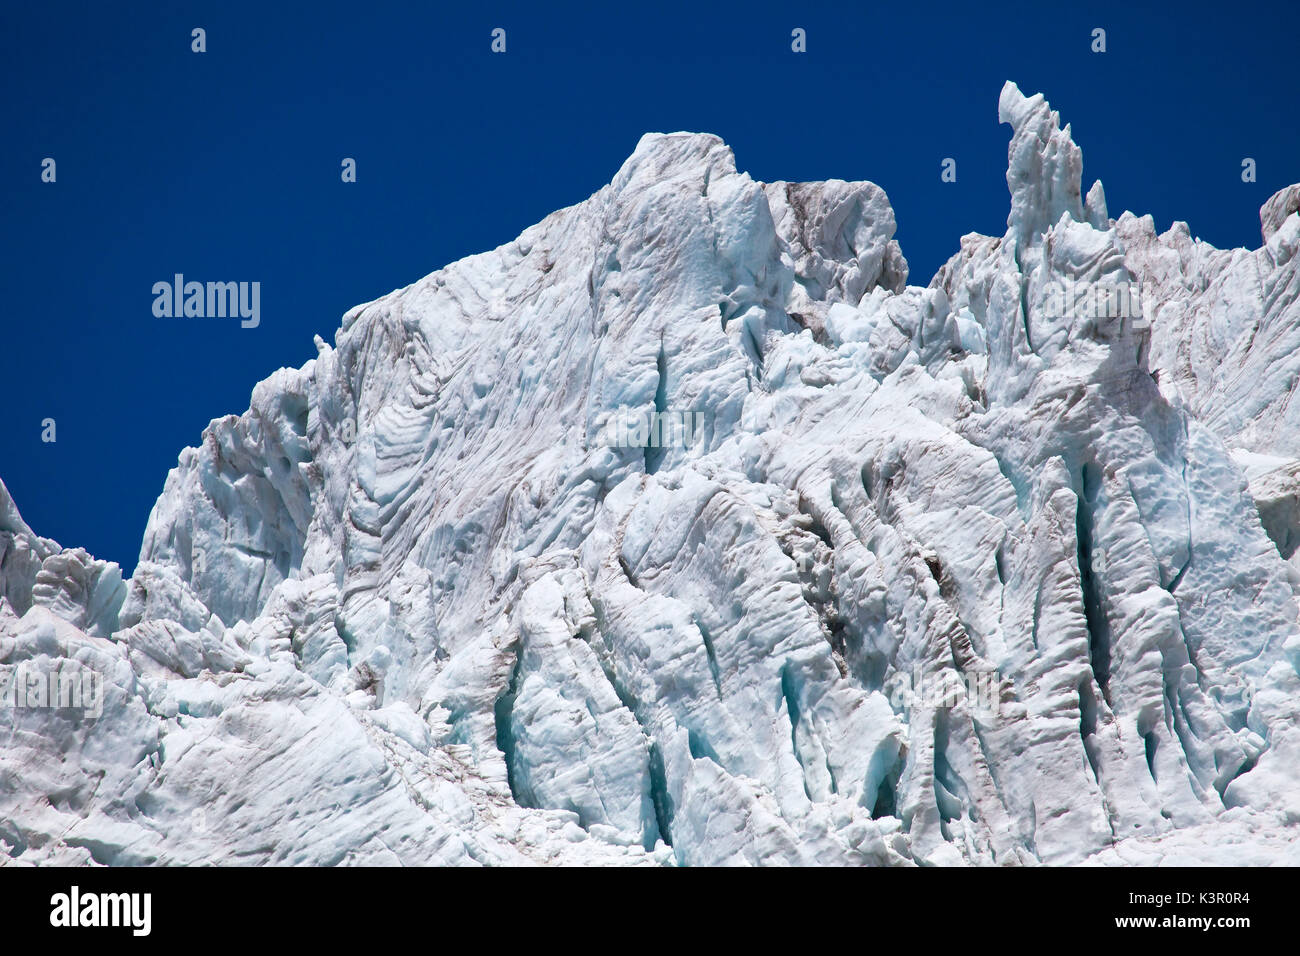 Una serie de resquicios del glaciar Fellaria que, aunque lentamente, se retira aún impresionantes, Valmalenco, Valtellina, Lombardía Italia Europa Foto de stock